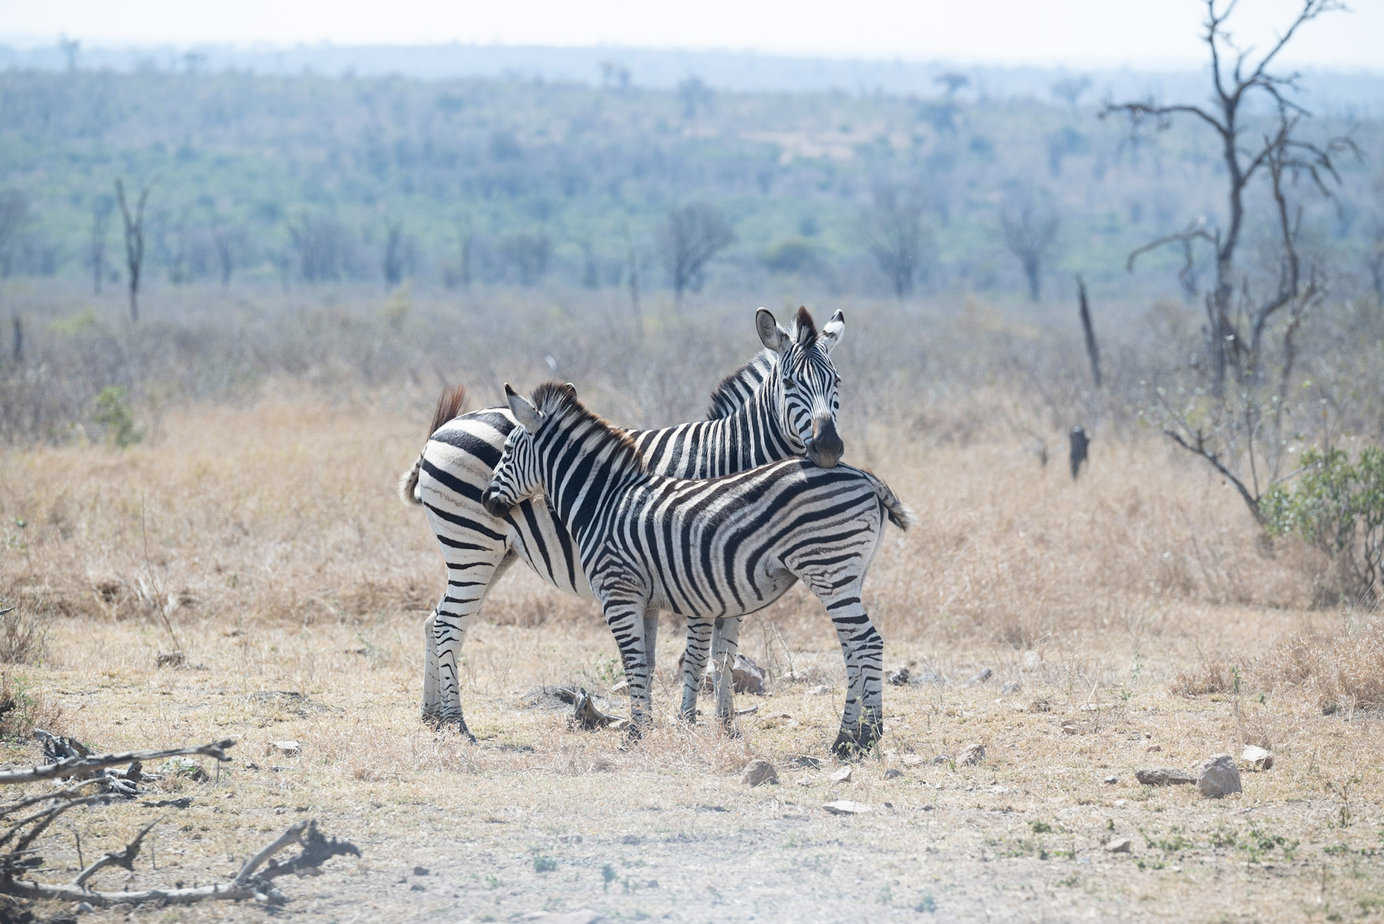 Two zebras standing together in Kruger National Park